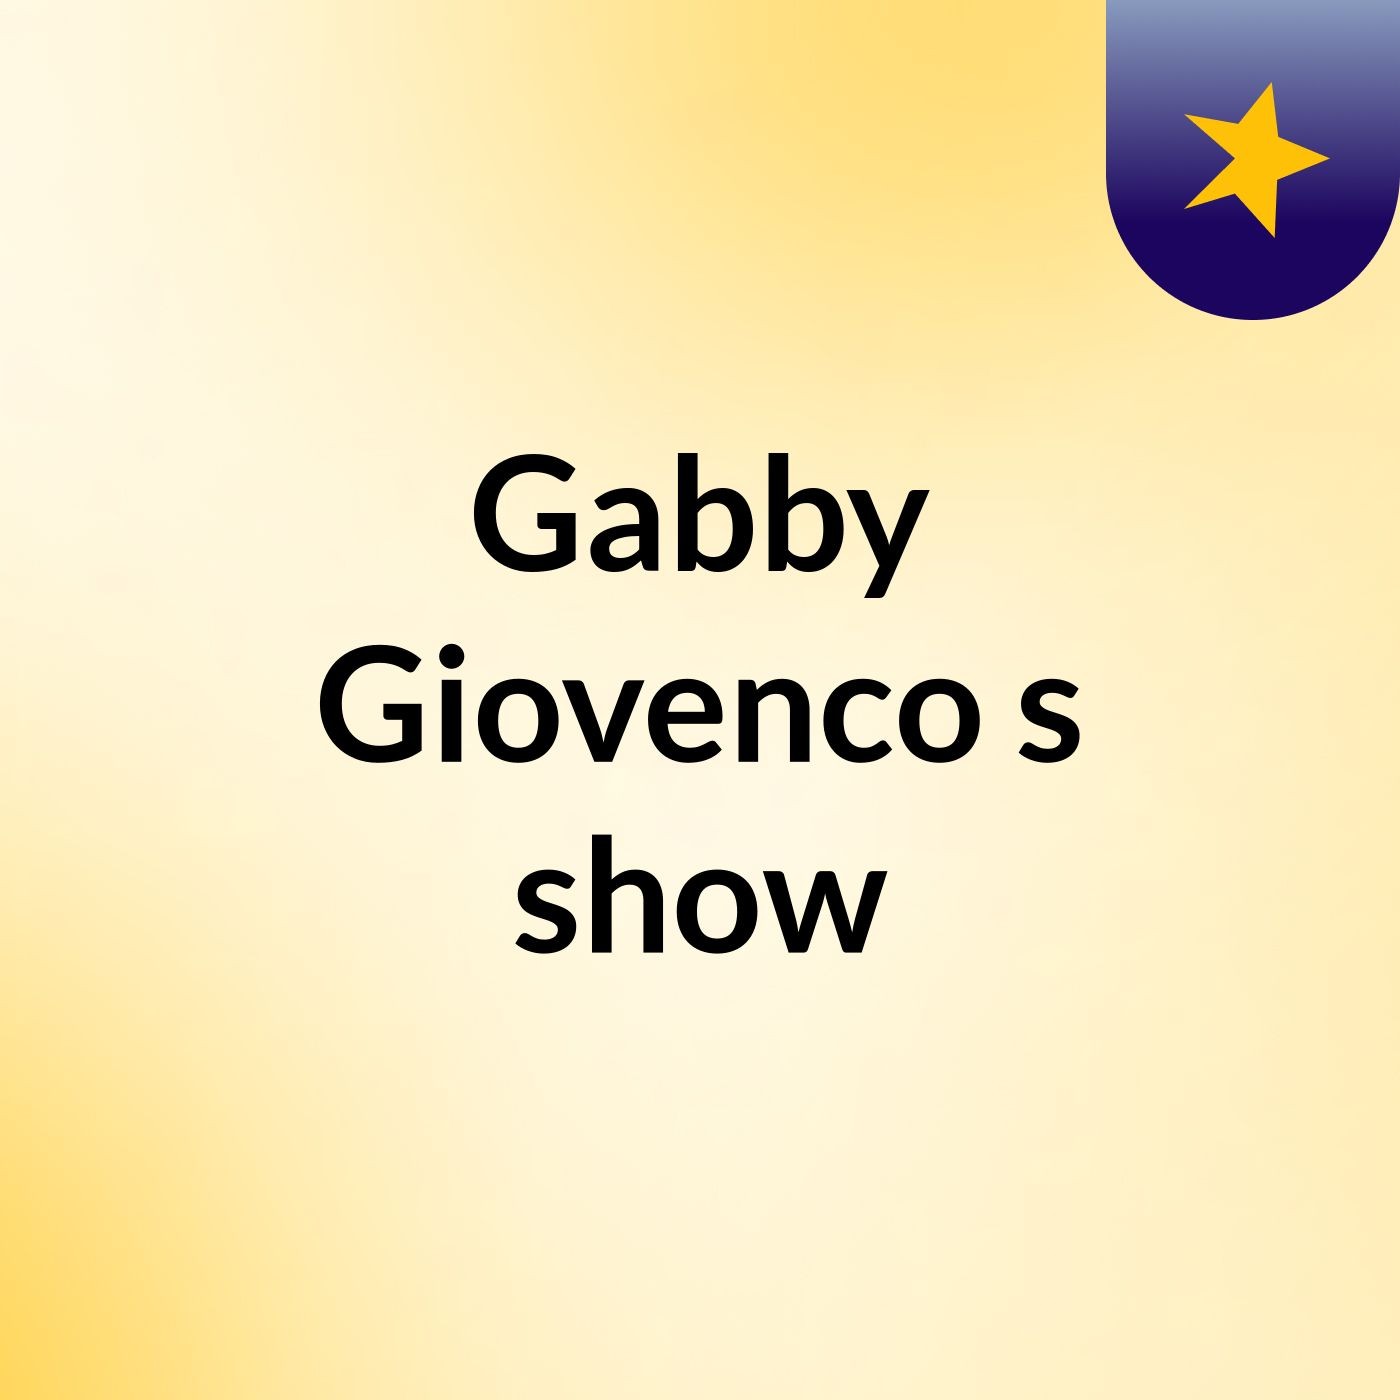 Gabby Giovenco's show